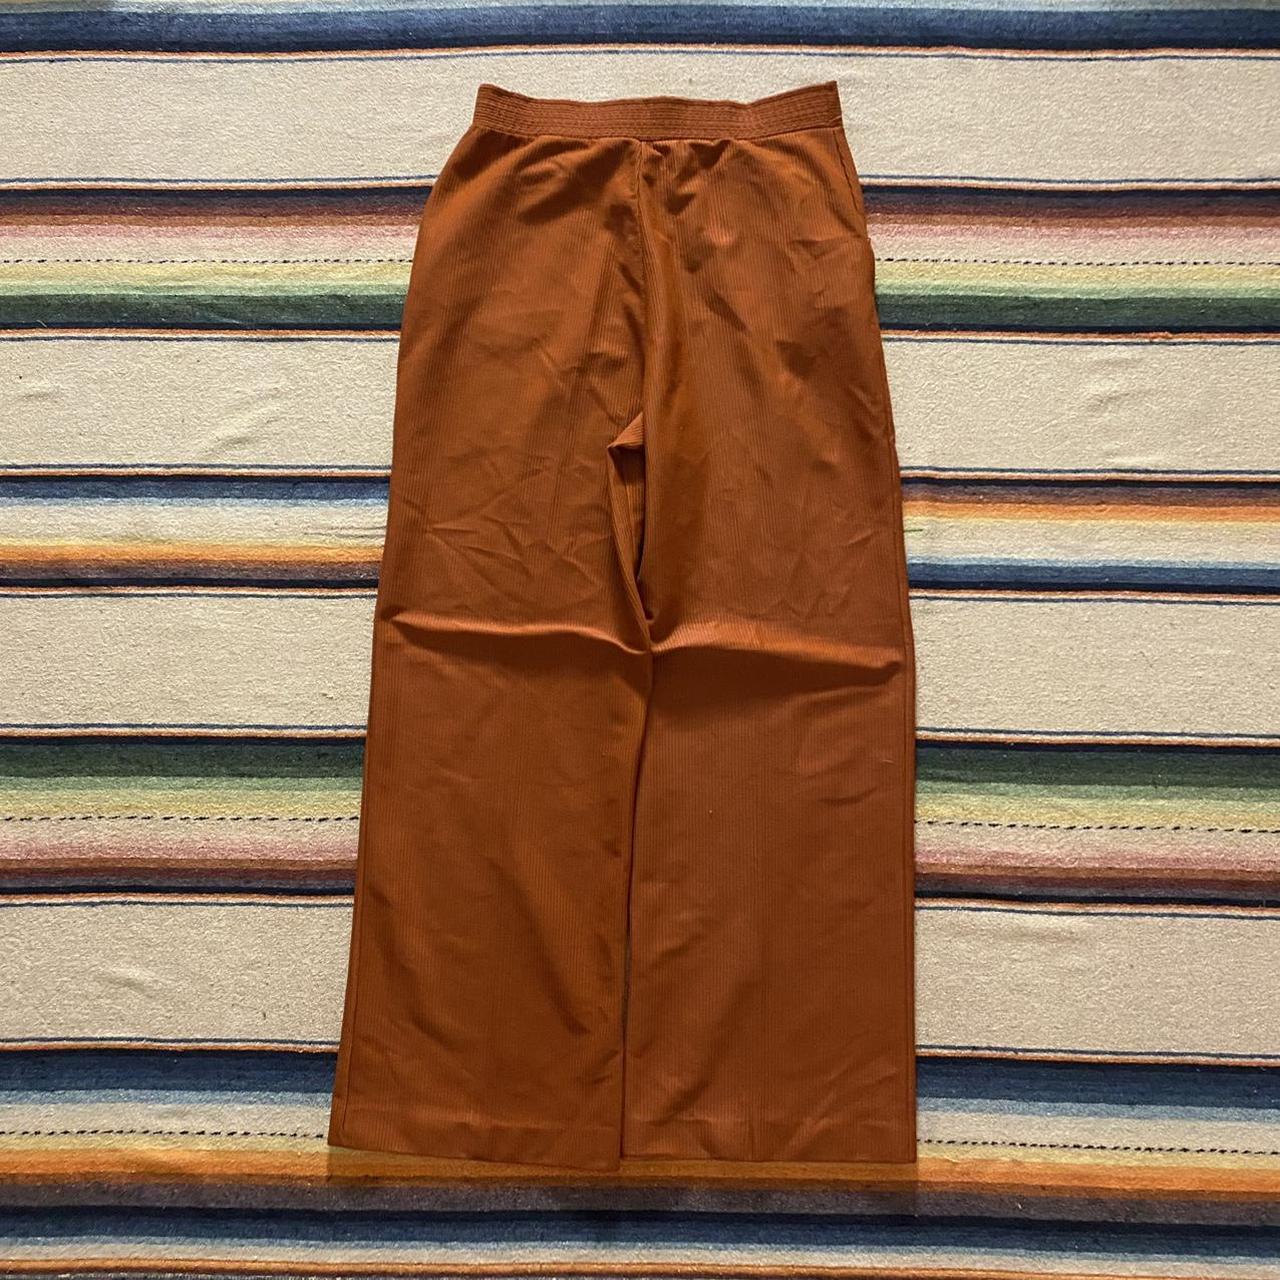 Sears Women's Orange Trousers (2)